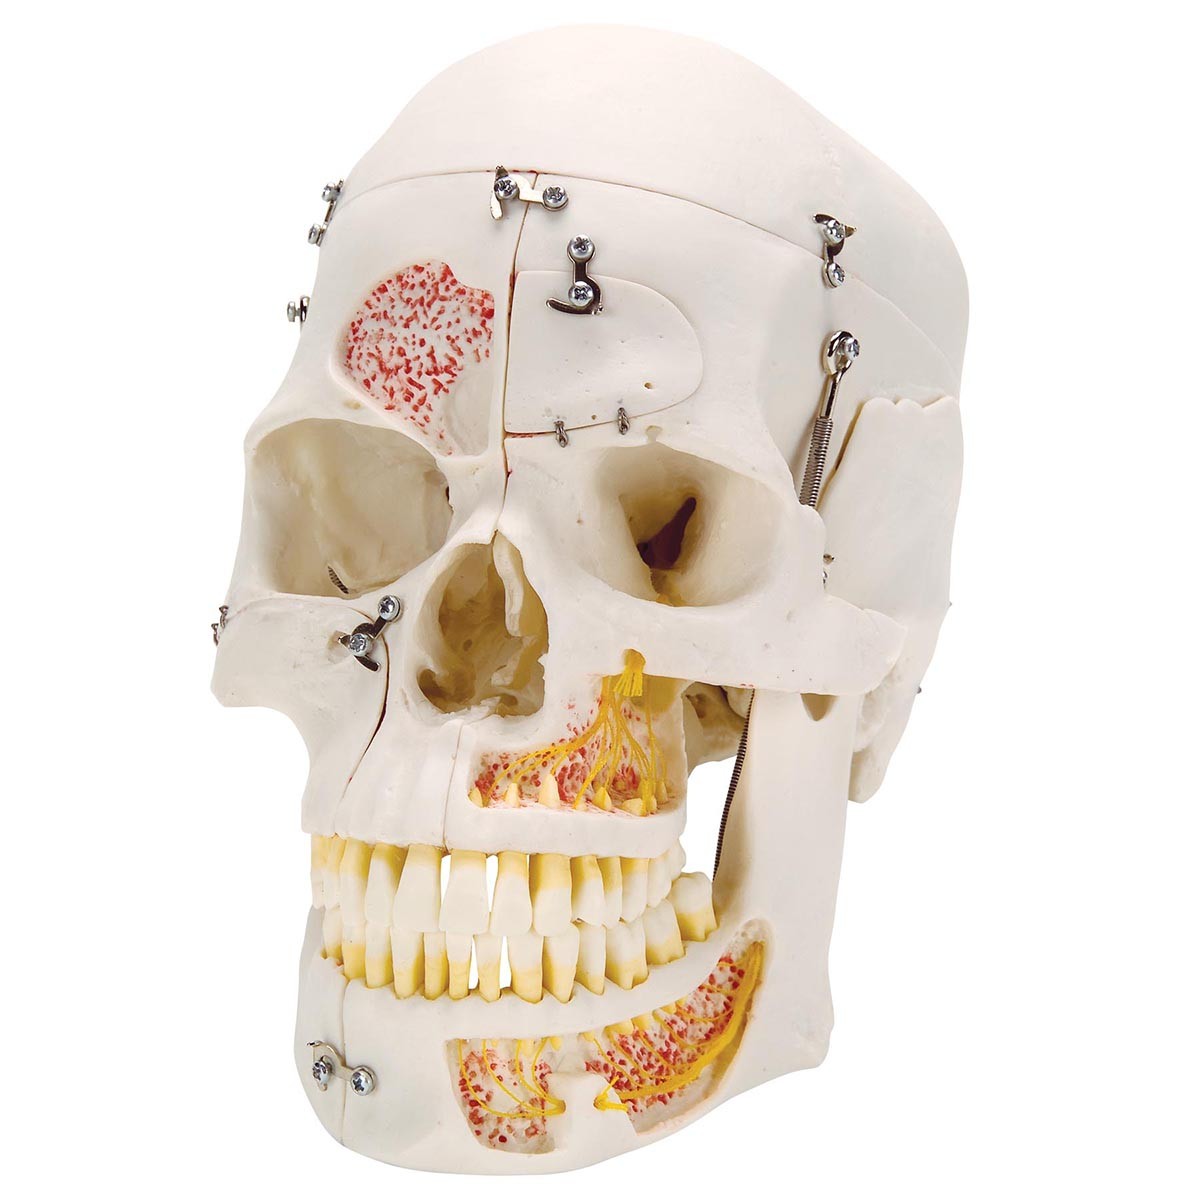 Crâne humain de démonstration de luxe, en 10 parties chez Toomedical